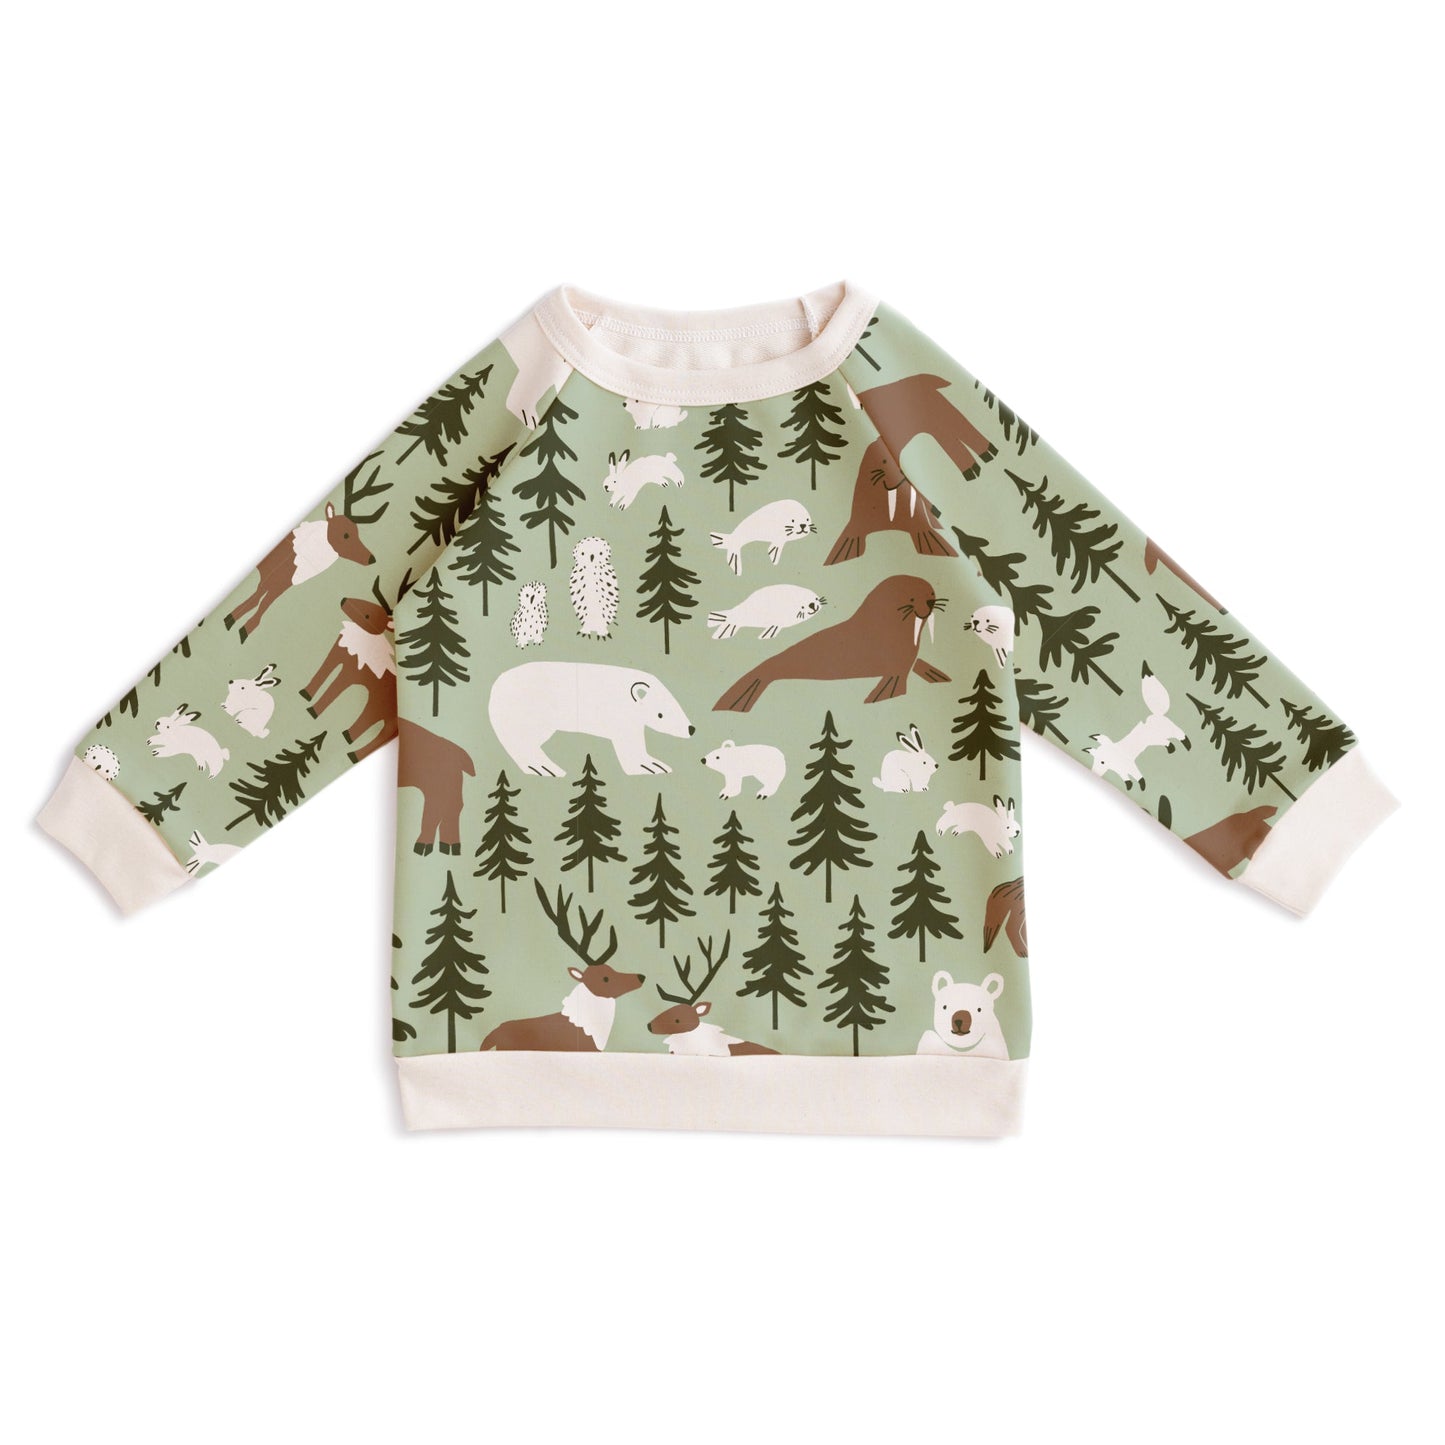 Sweatshirt - Northern Animals Pale Green